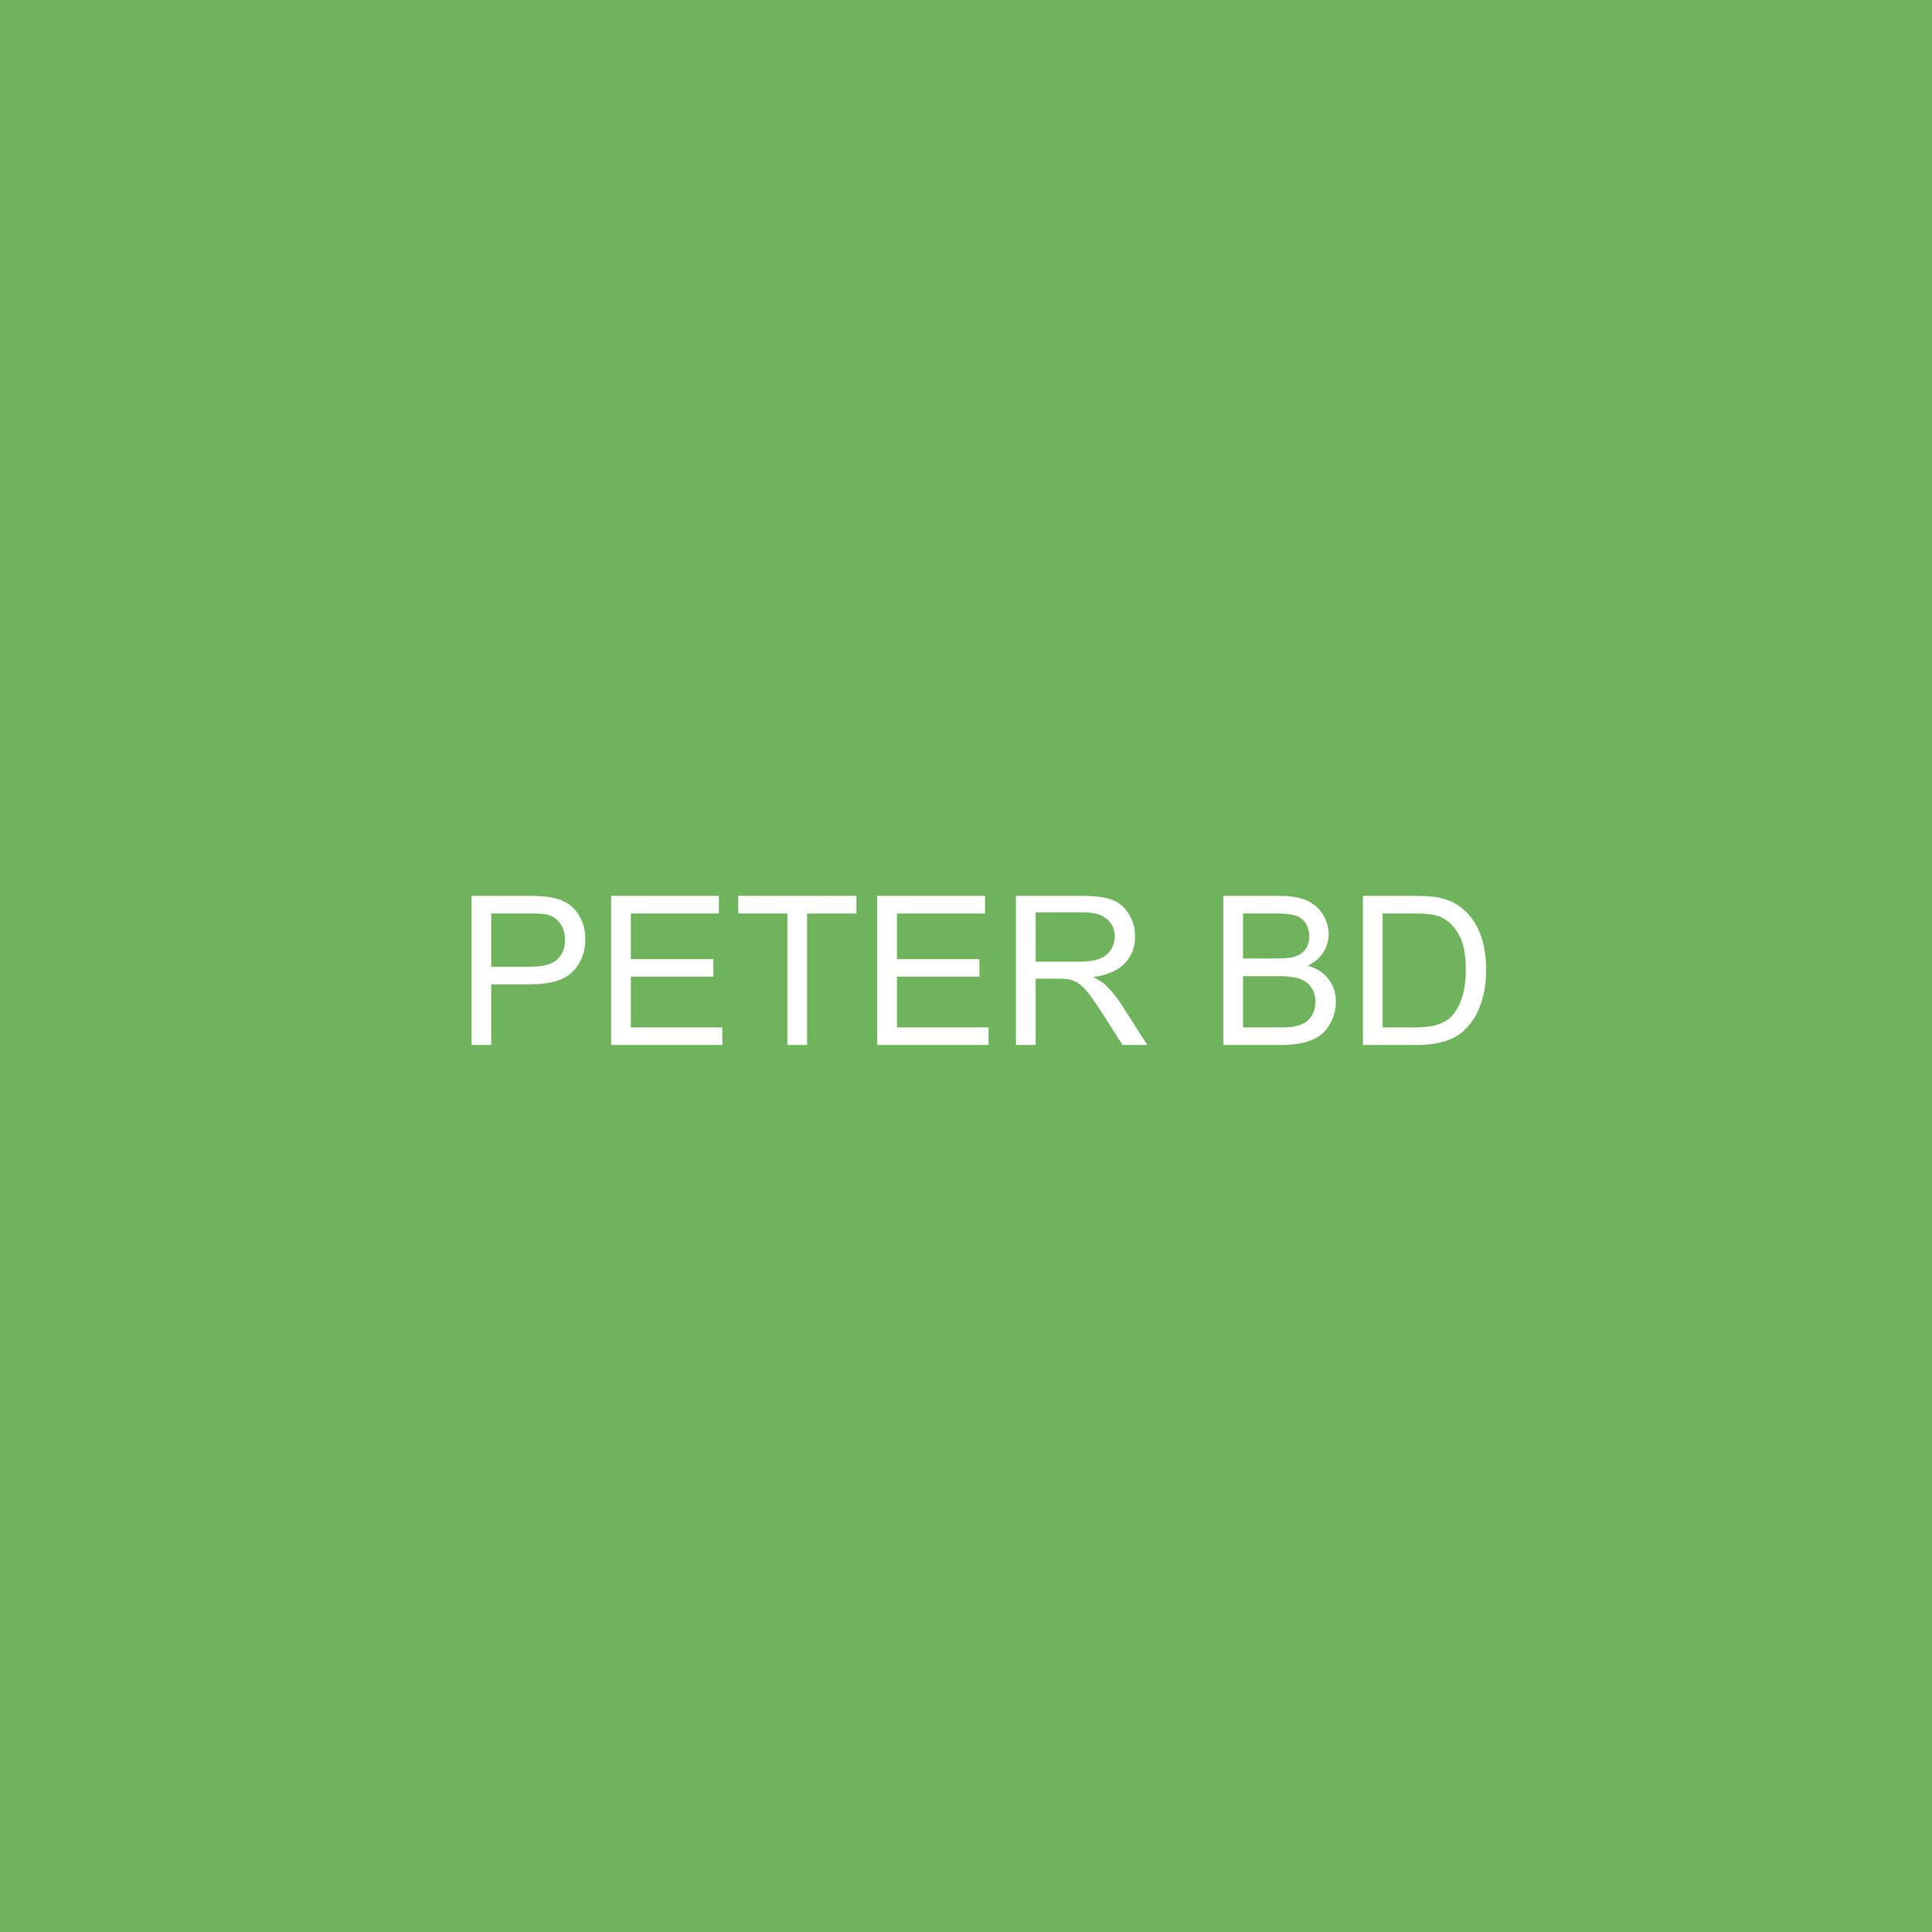 PETERBD.jpg